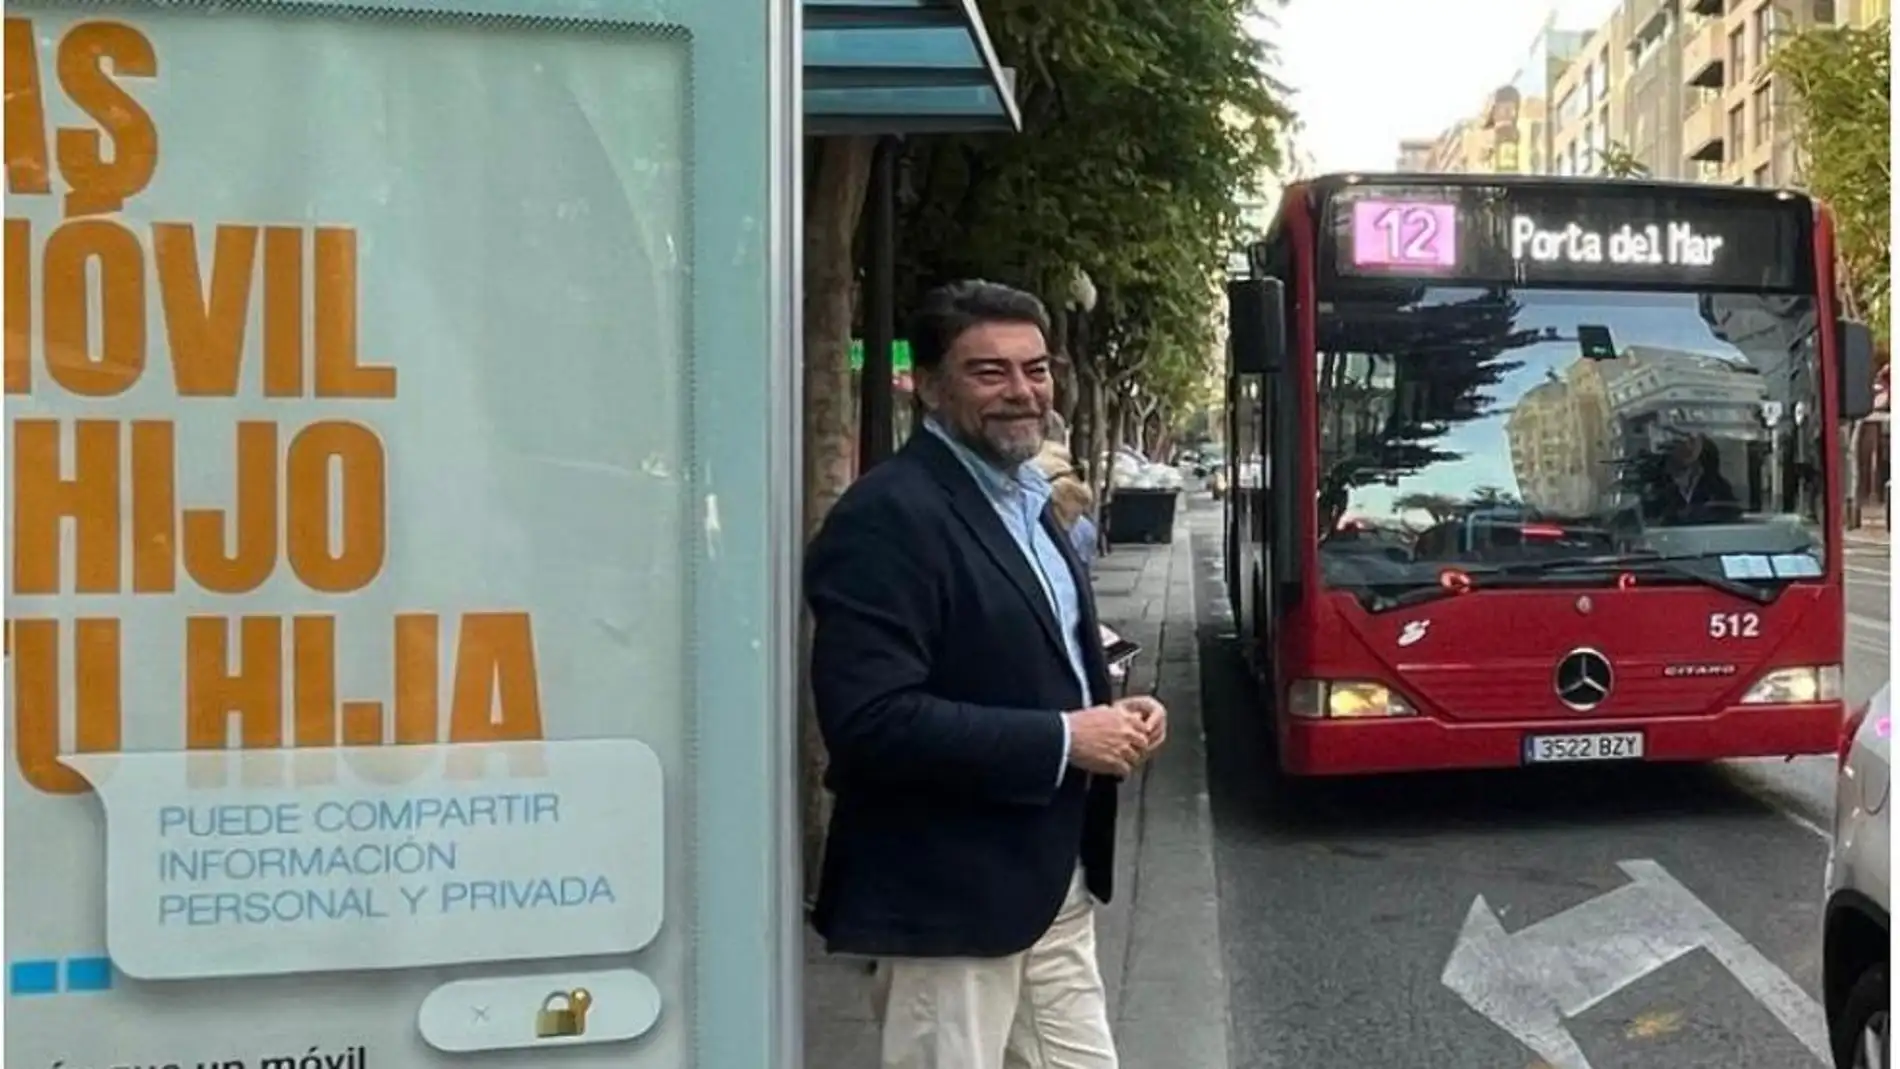 Autobús gratuito para los jóvenes en Alicante a partir del 1 de agosto